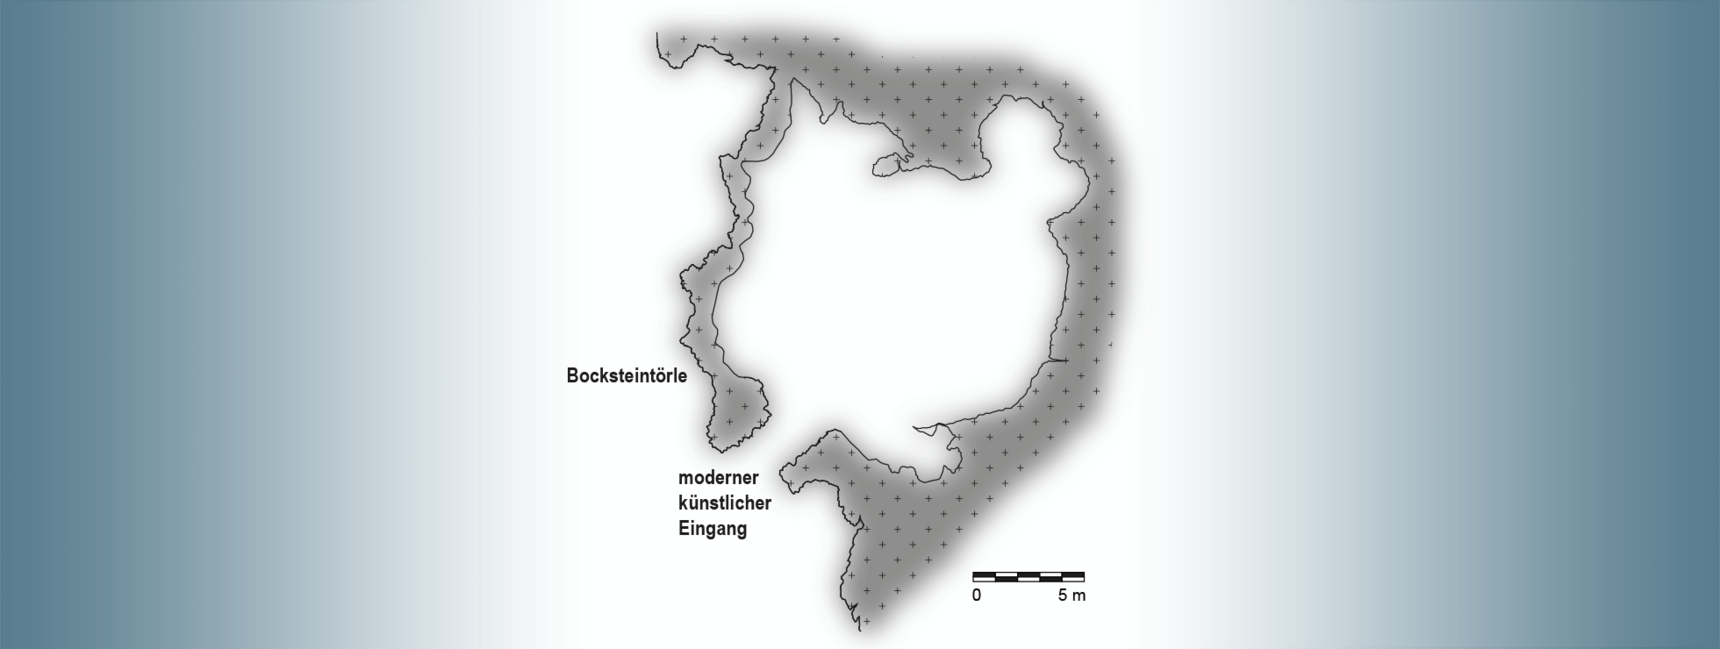 Grundriss der Bocksteinhöhle.